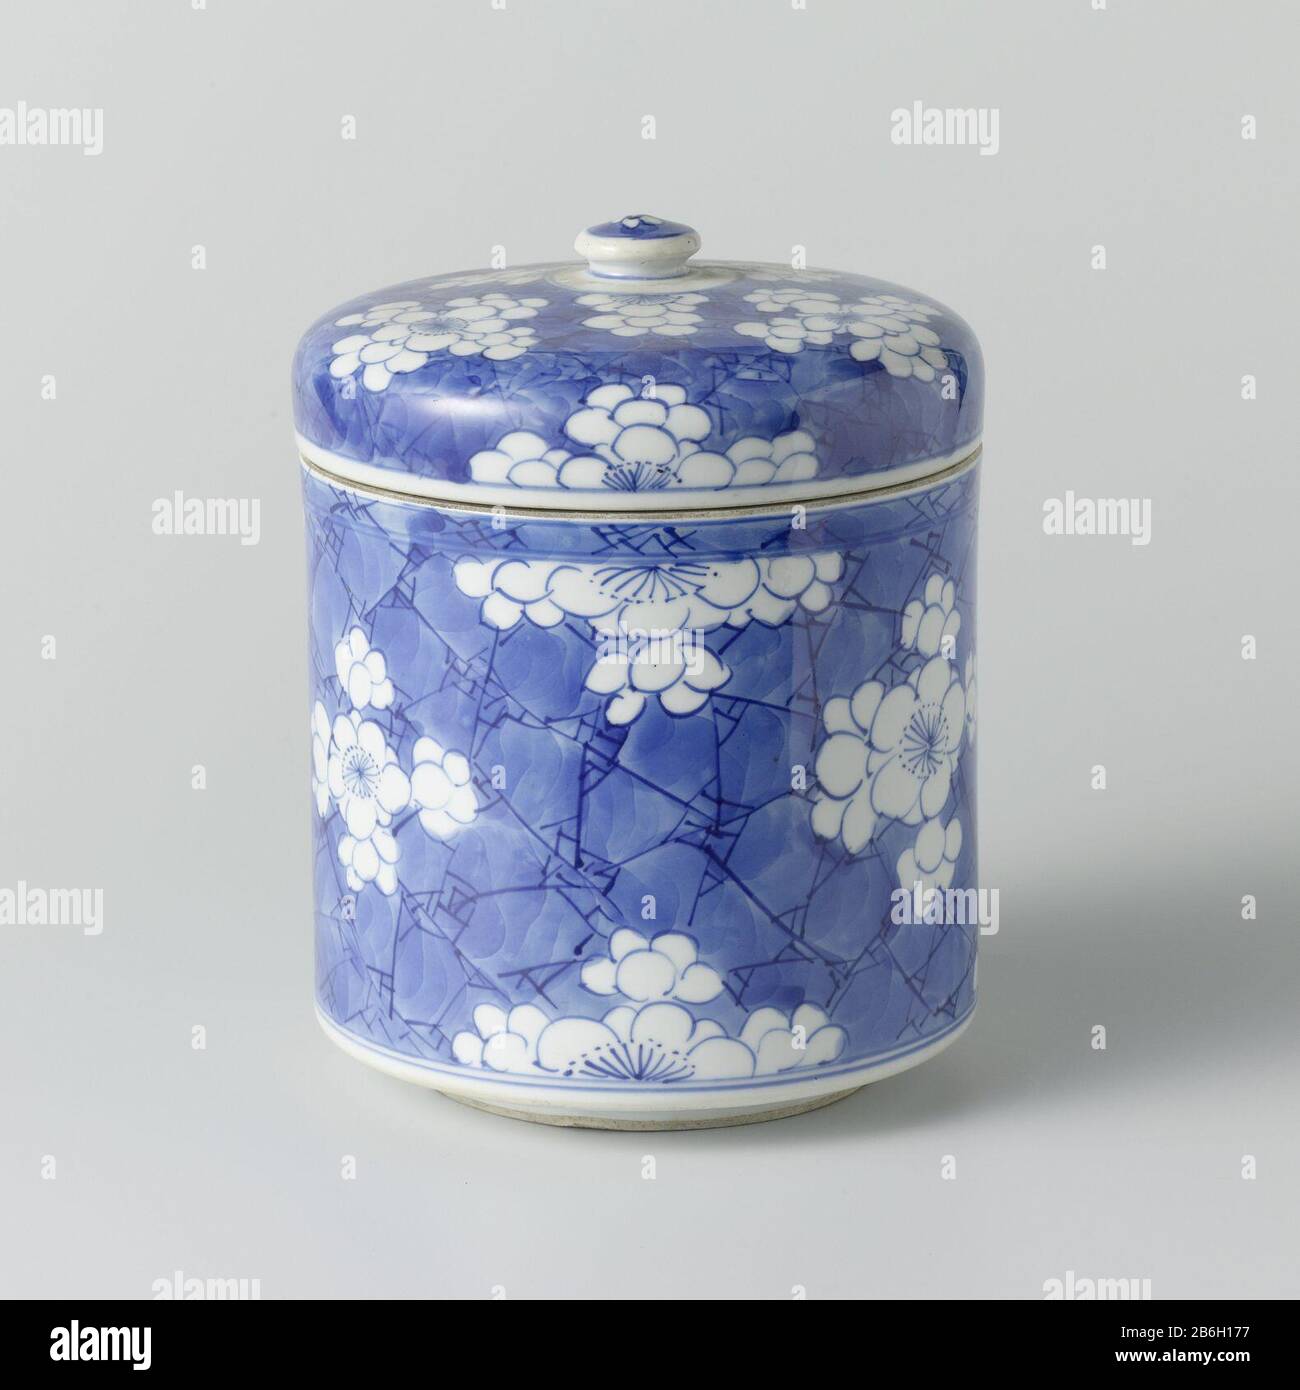 Cylindrical lidded with flowers in reserve Cilindrische dekselpot van porselein, beschilderd in onderglazuur blauw. Bedekt met een 'crackled ice' blauwe grond met pruimenbloesems in reserve. Een barst in de wand. Blauw-wit. Manufacturer : pottenbakker: anoniemPlaats manufacture: China Dating: ca. 1680 - ca. 1720School / stijl: Qing-dynastie (1644-1912) / Kangxi-periode (1662-1722) / Yongzheng-periode (1723-1735) Physical kenmerken: porselein met onderglazuur blauw Material: porselein glazuur kobalt Techniek: draaiend bewerken / bakken / schilderen / glazuren Dimensions: pot: h 12,4 cm. rand: d Stock Photo